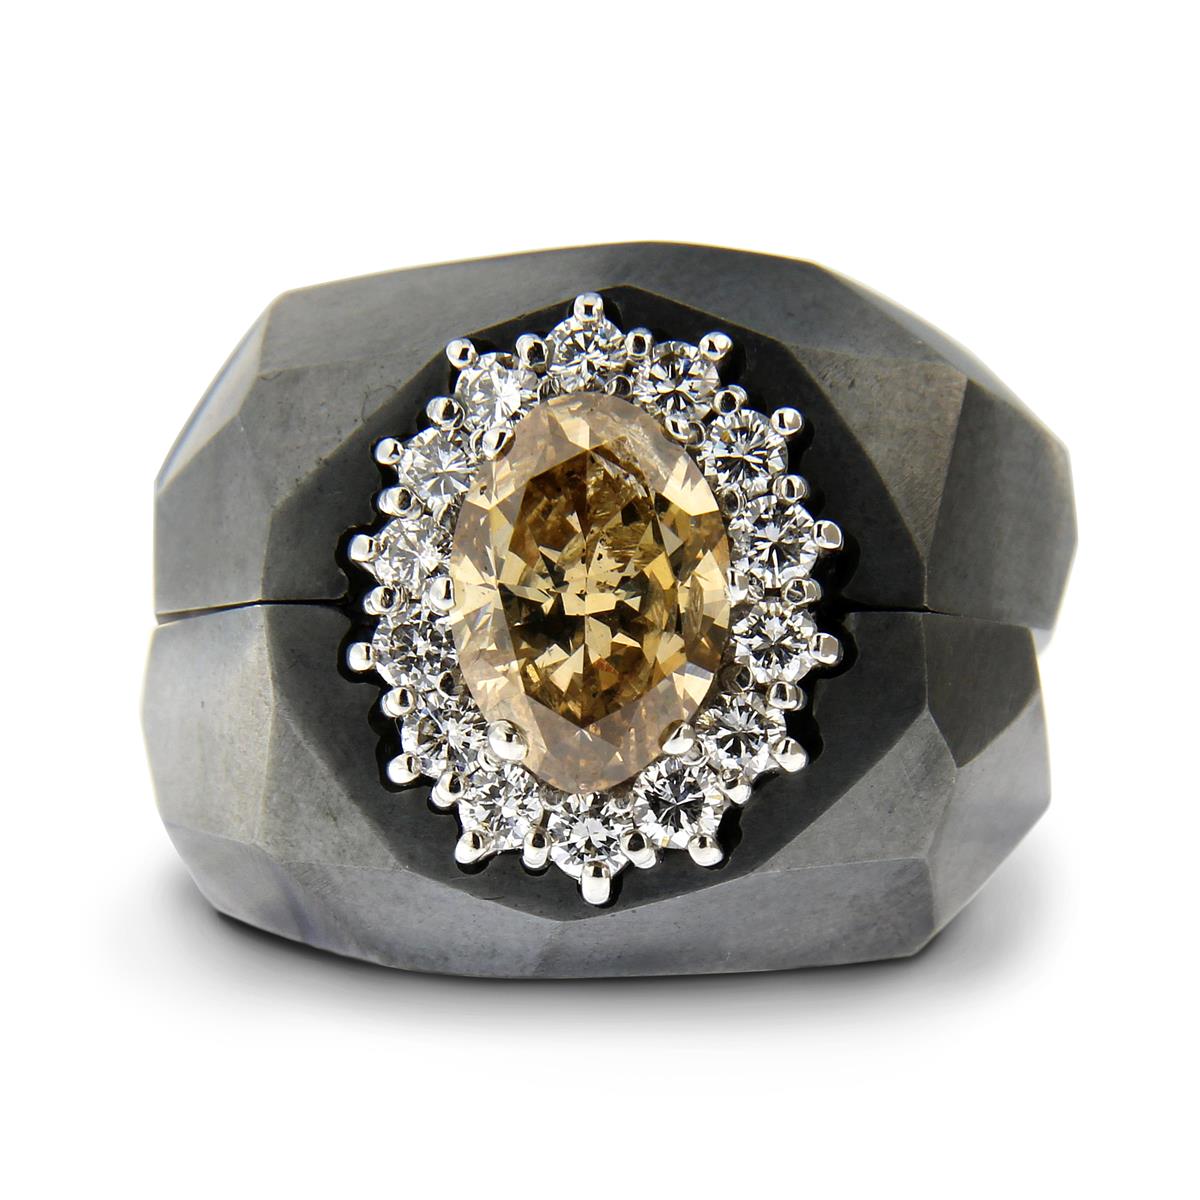 Katie g. Jewellery_Ring Casing aus schwarz oxidiertem Silber mit Familienerbstück 14kt. Weißgold mit einem zentralen braunen ovalschliff Diamant und weißen Brillanten